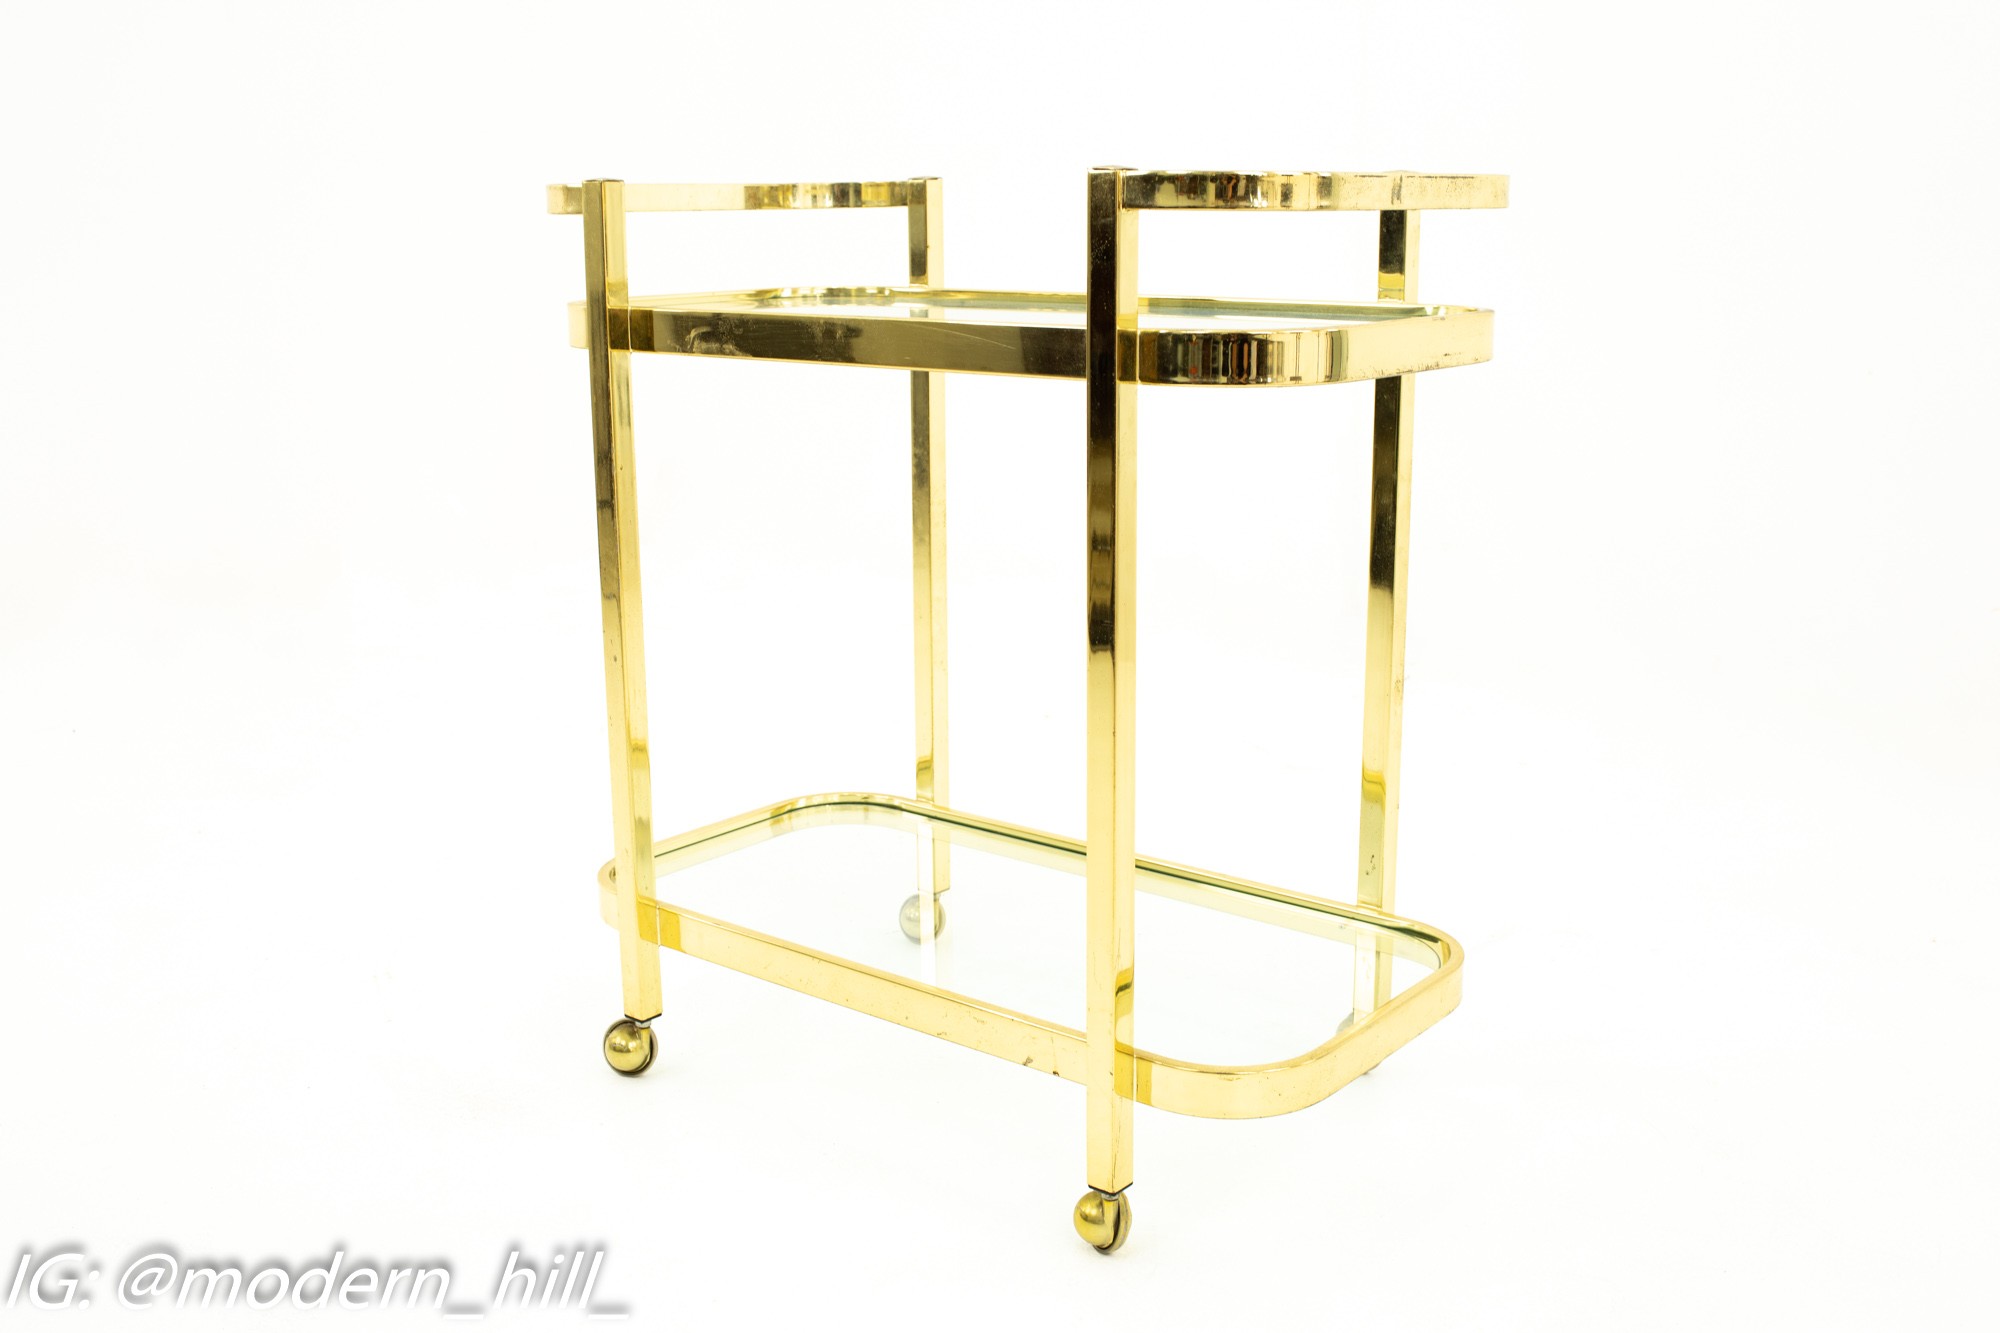 Milo Baughman Mid Century Brass and Glass Bar Cart